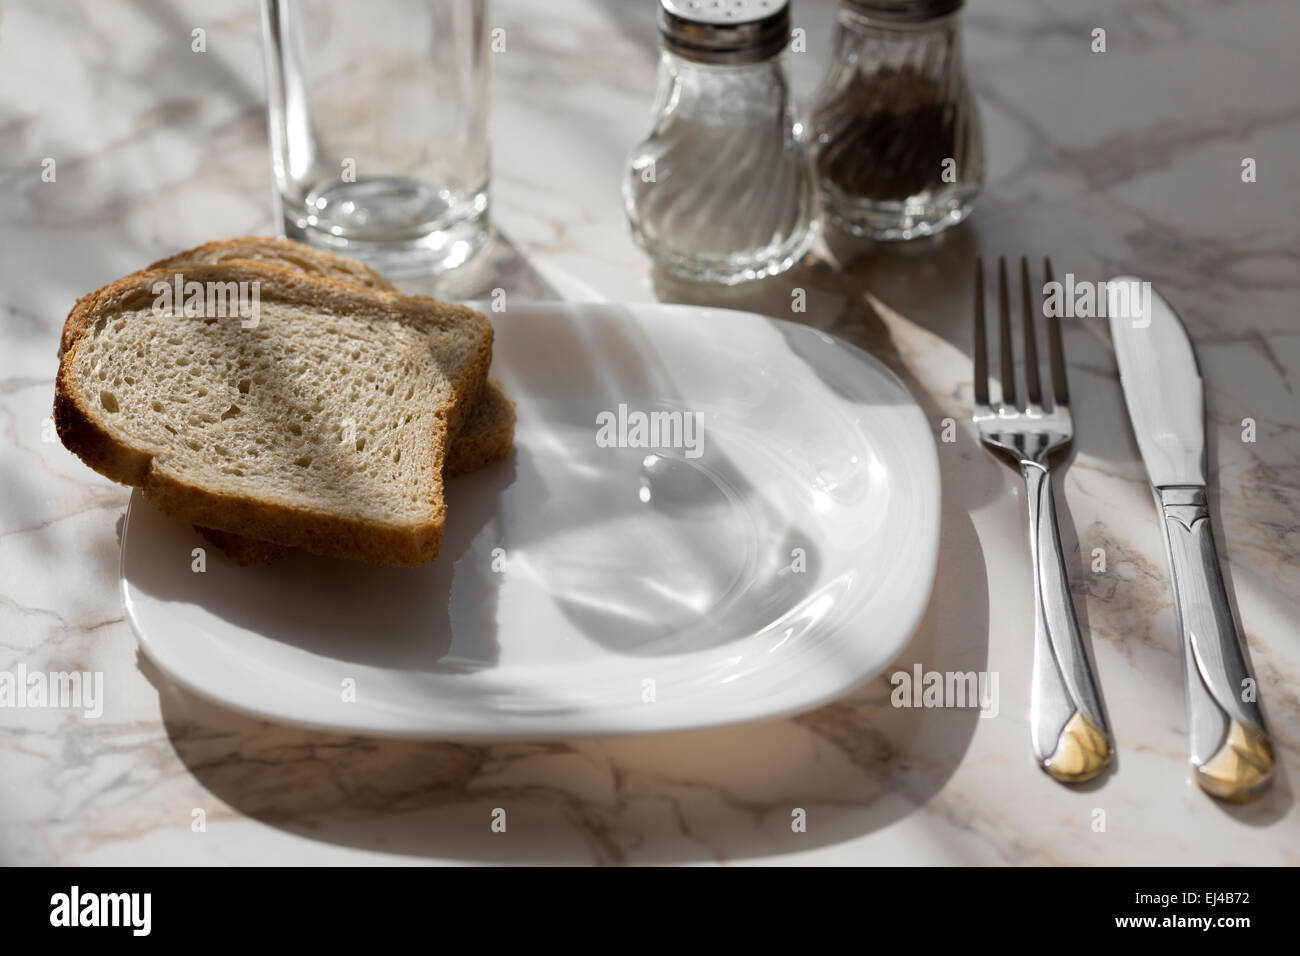 La plaque vide avec du pain sur la table en bois Banque D'Images